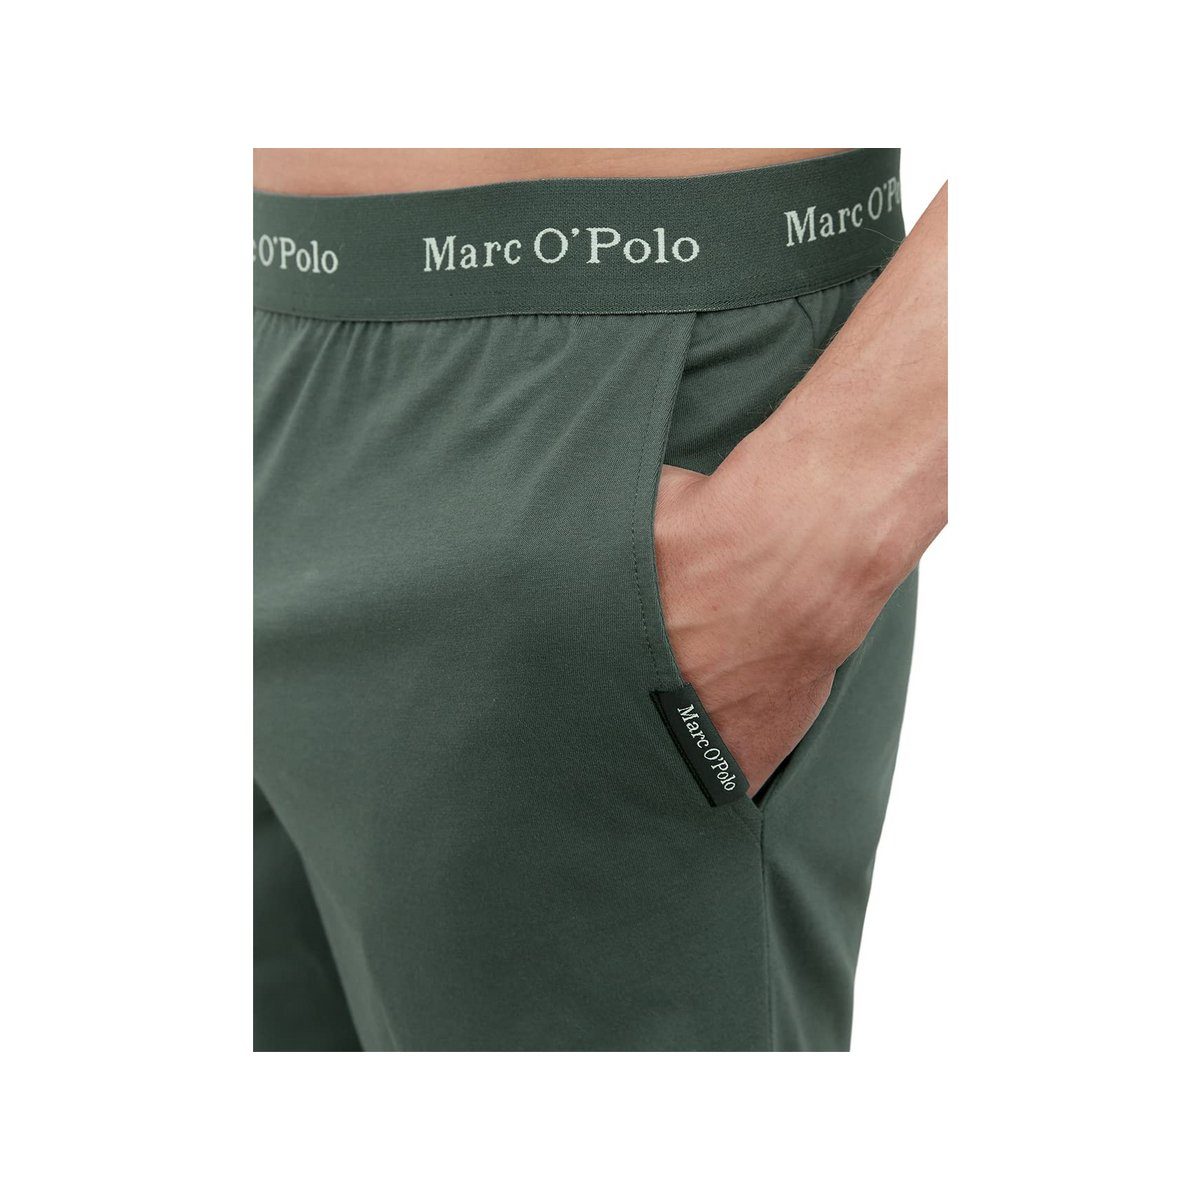 (1 kahki tlg) O'Polo Pyjama Marc